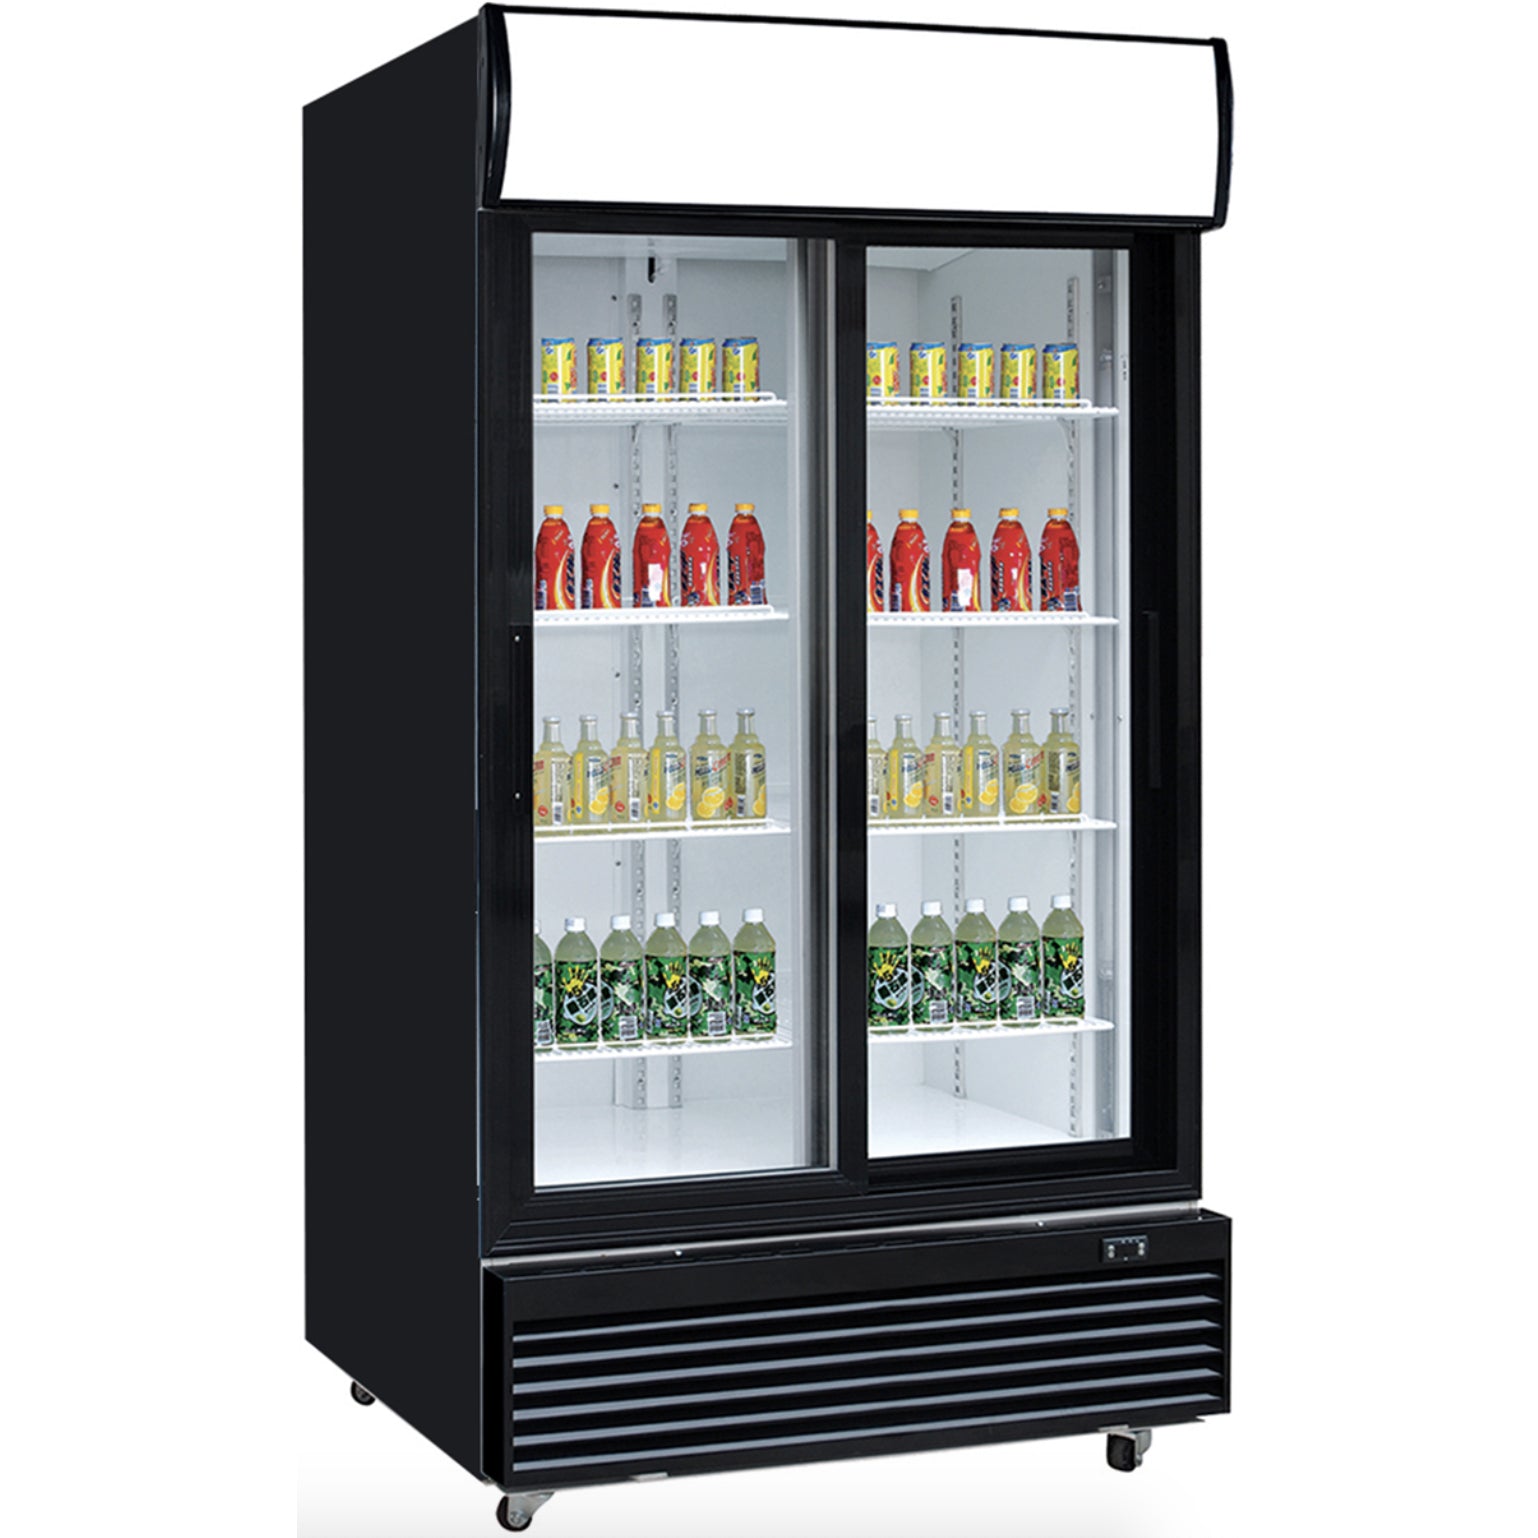 Chef AAA TSM-32BS Commercial Glass Sliding 2-Door Merchandiser Refrigerator